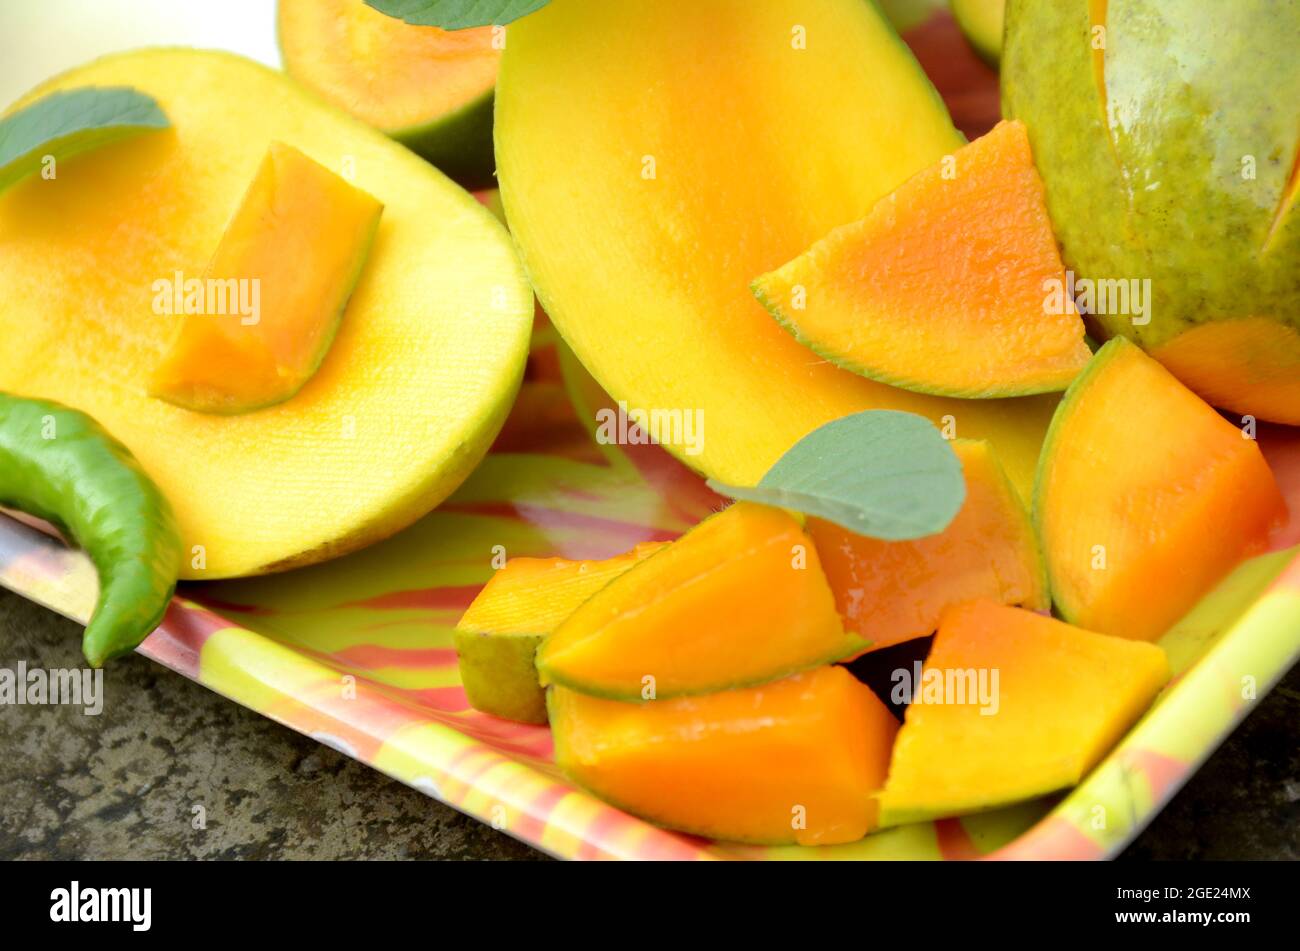 chiuda la frutta di mango giallo verde matura tagliata a fette con le foglie di menta verde e fredda nel vassoio sopra fuori di fuoco sfondo marrone grigio. Foto Stock